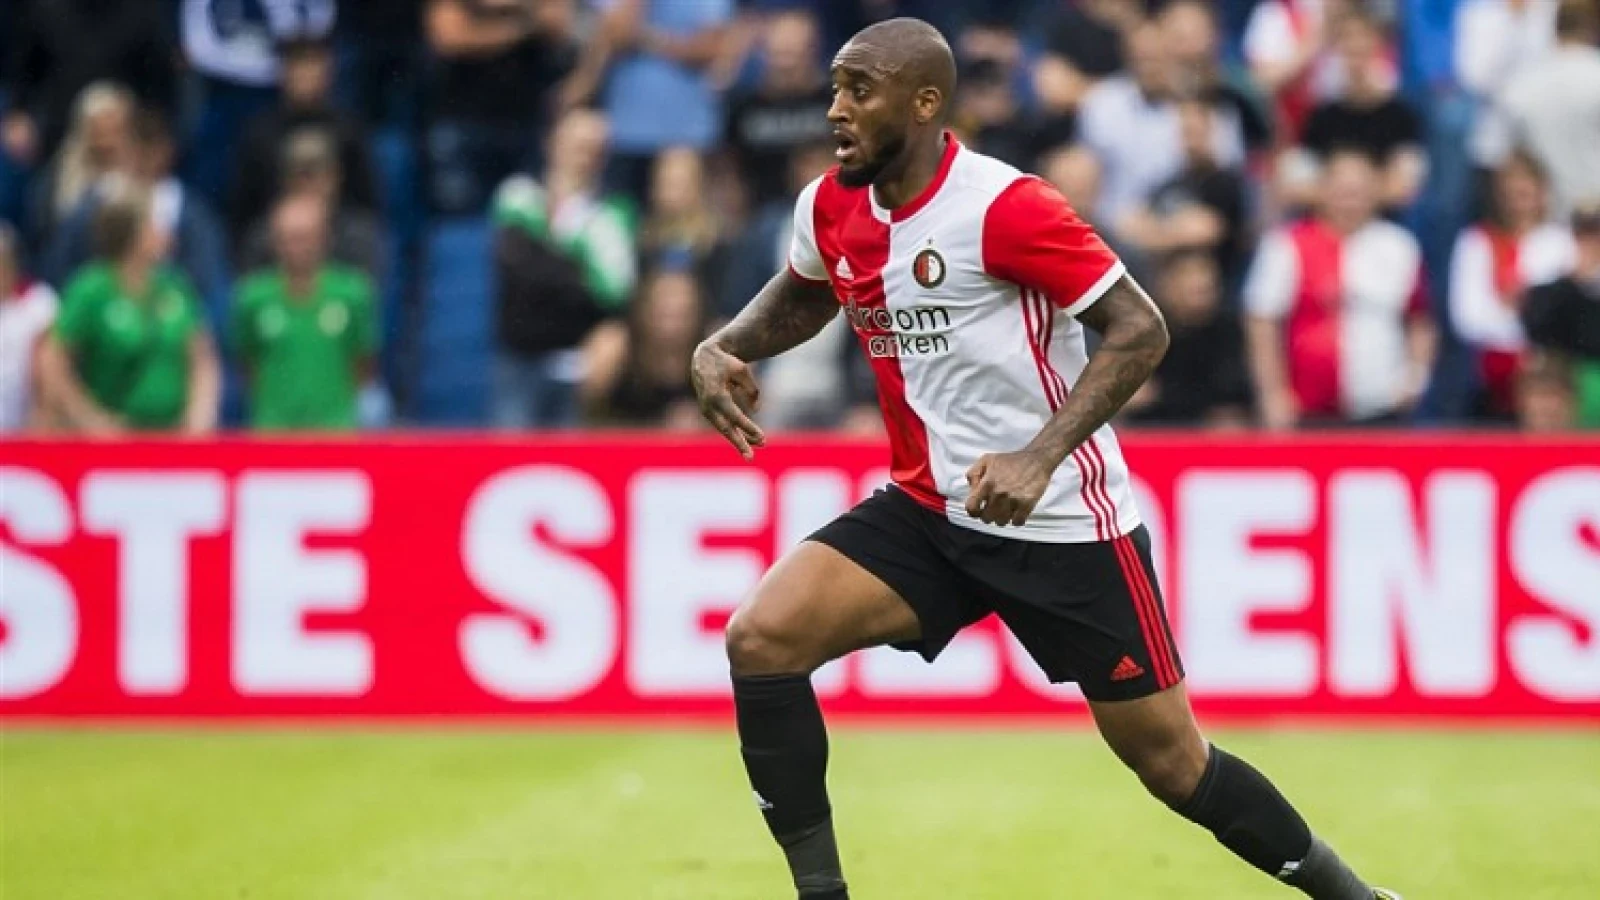 FOTO'S | Fer zet handtekening onder contract bij Feyenoord